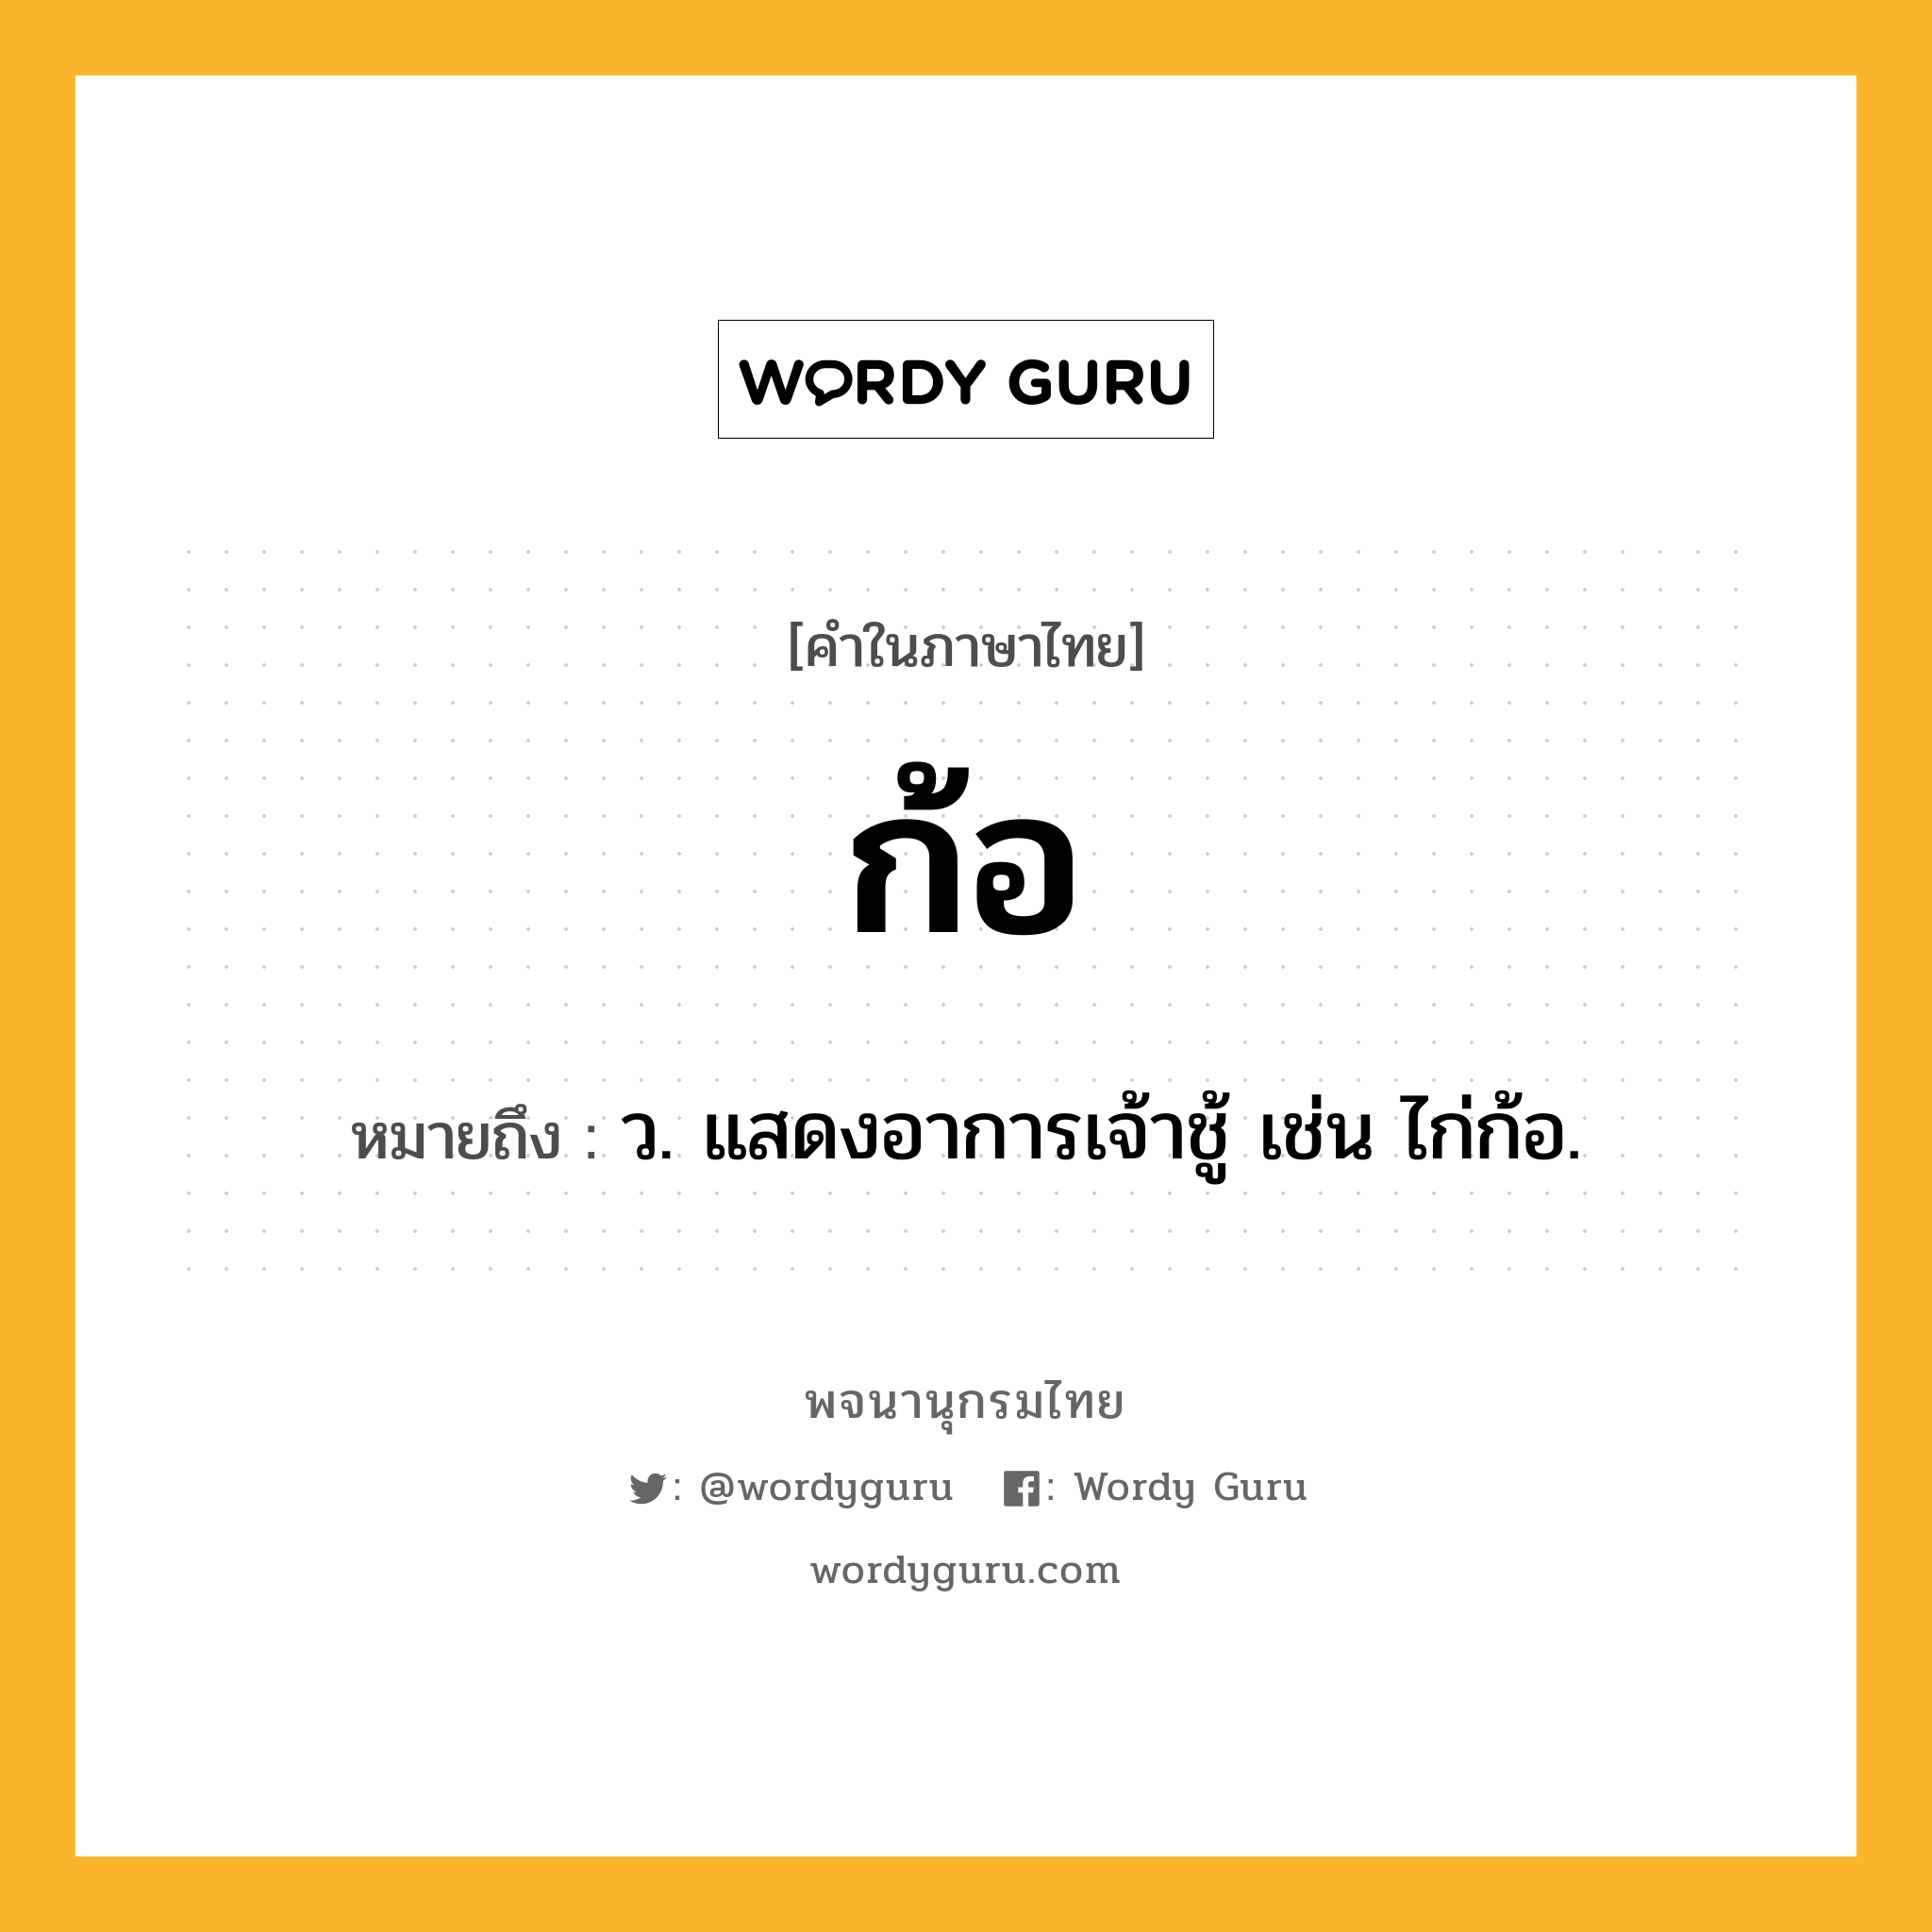 ก้อ ความหมาย หมายถึงอะไร?, คำในภาษาไทย ก้อ หมายถึง ว. แสดงอาการเจ้าชู้ เช่น ไก่ก้อ.